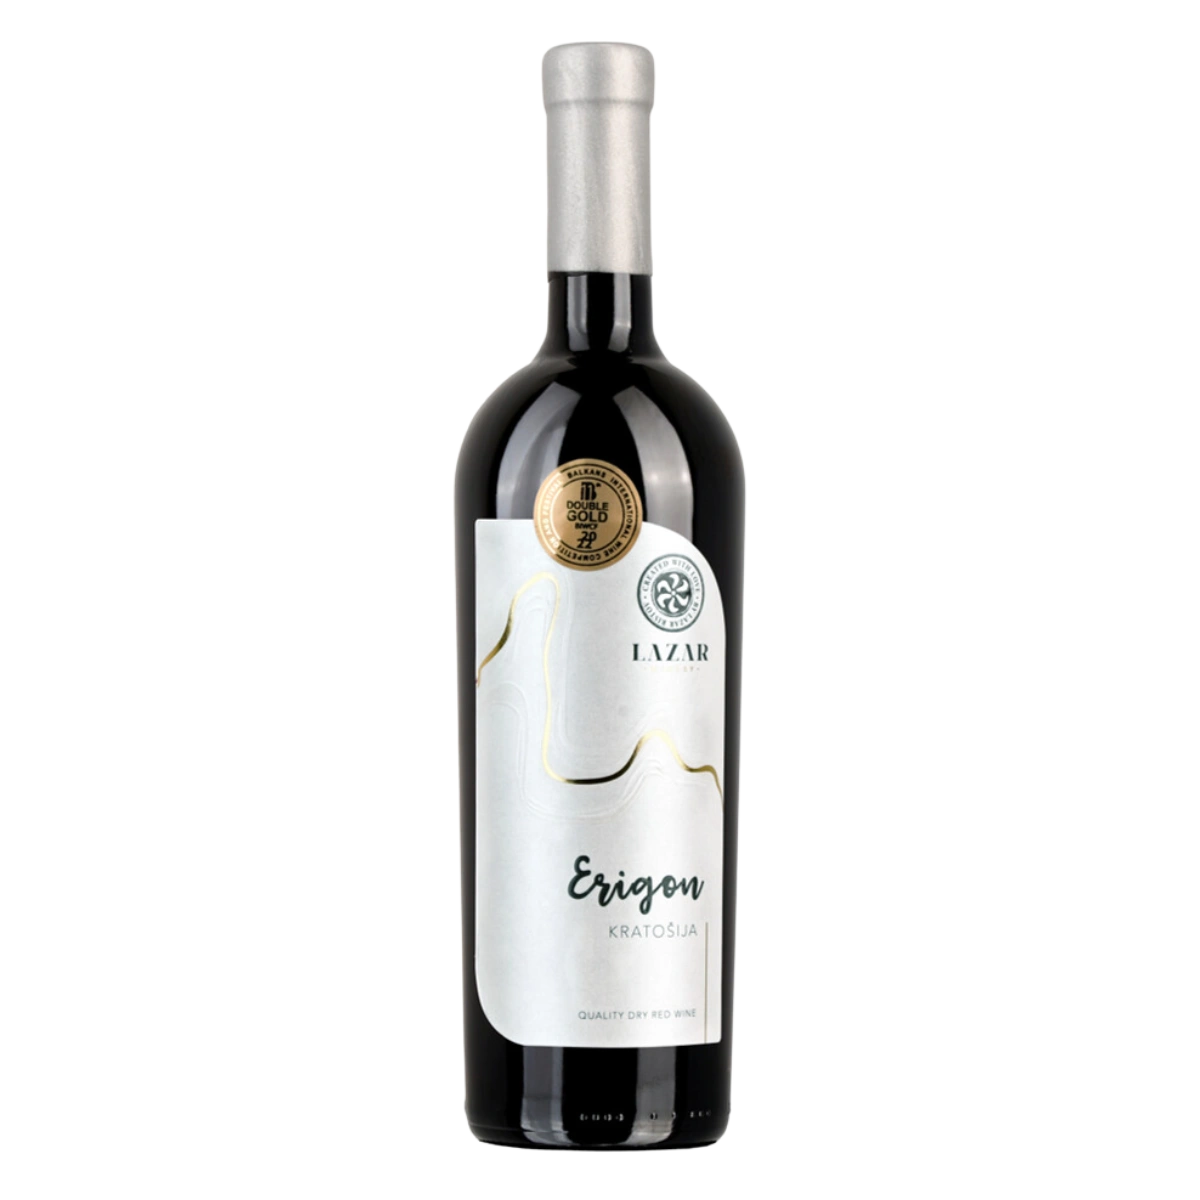 Erigon Kratosija 2020 - Rotwein trocken aus Mazedonien - Lazar Winery